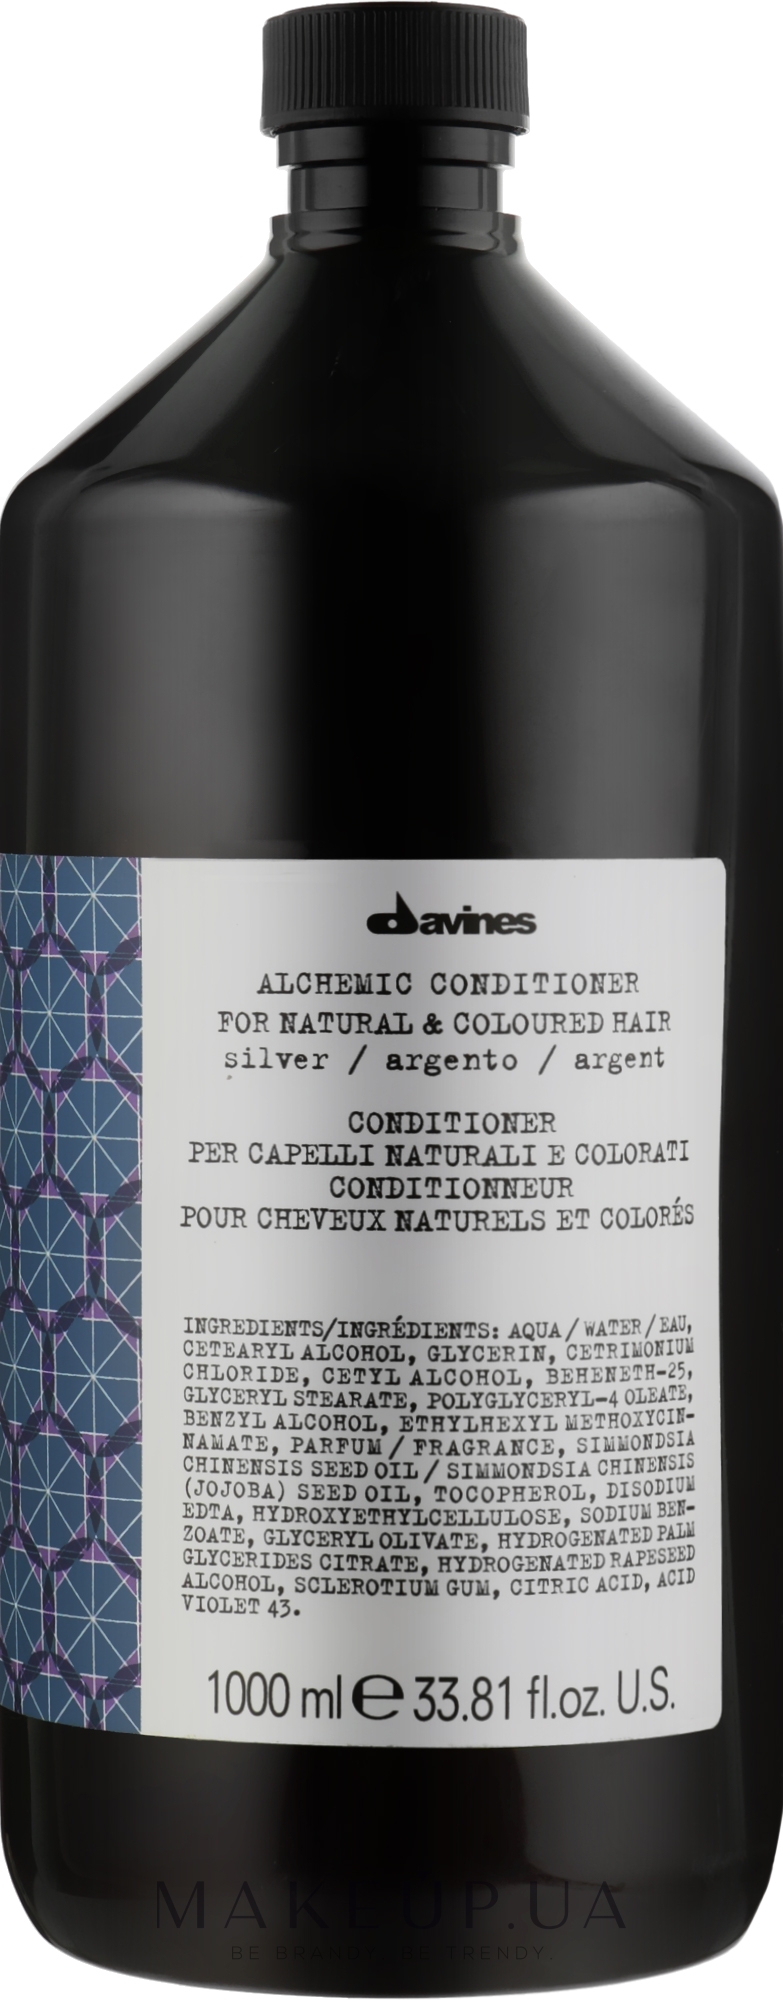 Кондиционер для натуральных и окрашенных волос (серебряный) - Davines Alchemic Conditioner — фото 1000ml